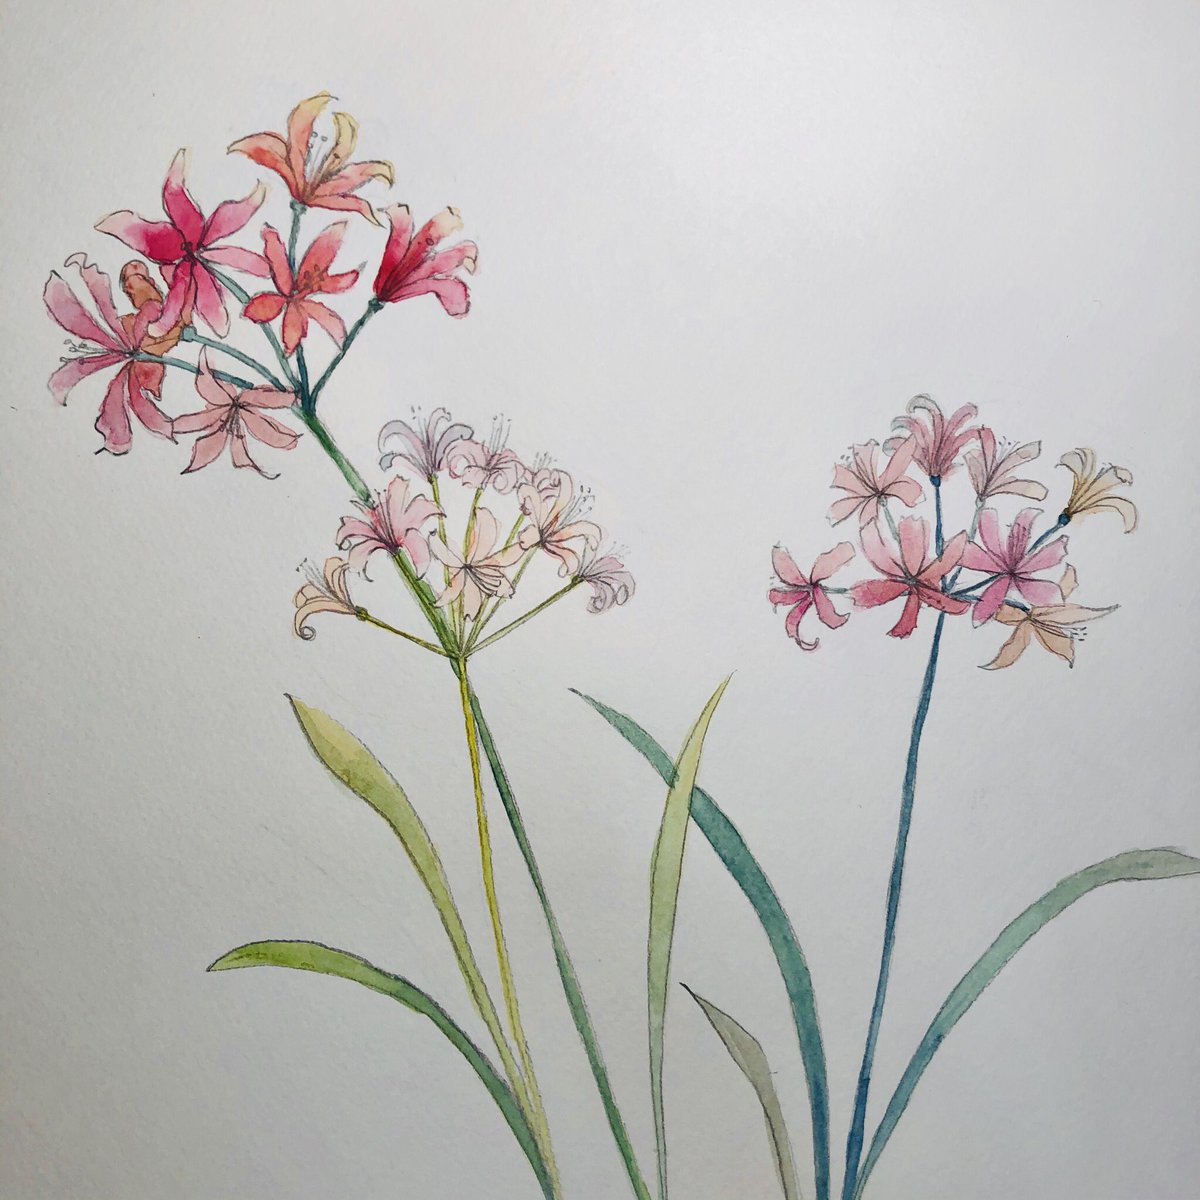 Miki ネリネ Nerine ダイヤモンドリリー Watercolor 水彩画 Art Sketch Flowers 花が好き ネリネ 花に日が当たると宝石のようにキラキラと輝くことからダイヤモンドリリーともよばれます T Co Lksc8zdm6c